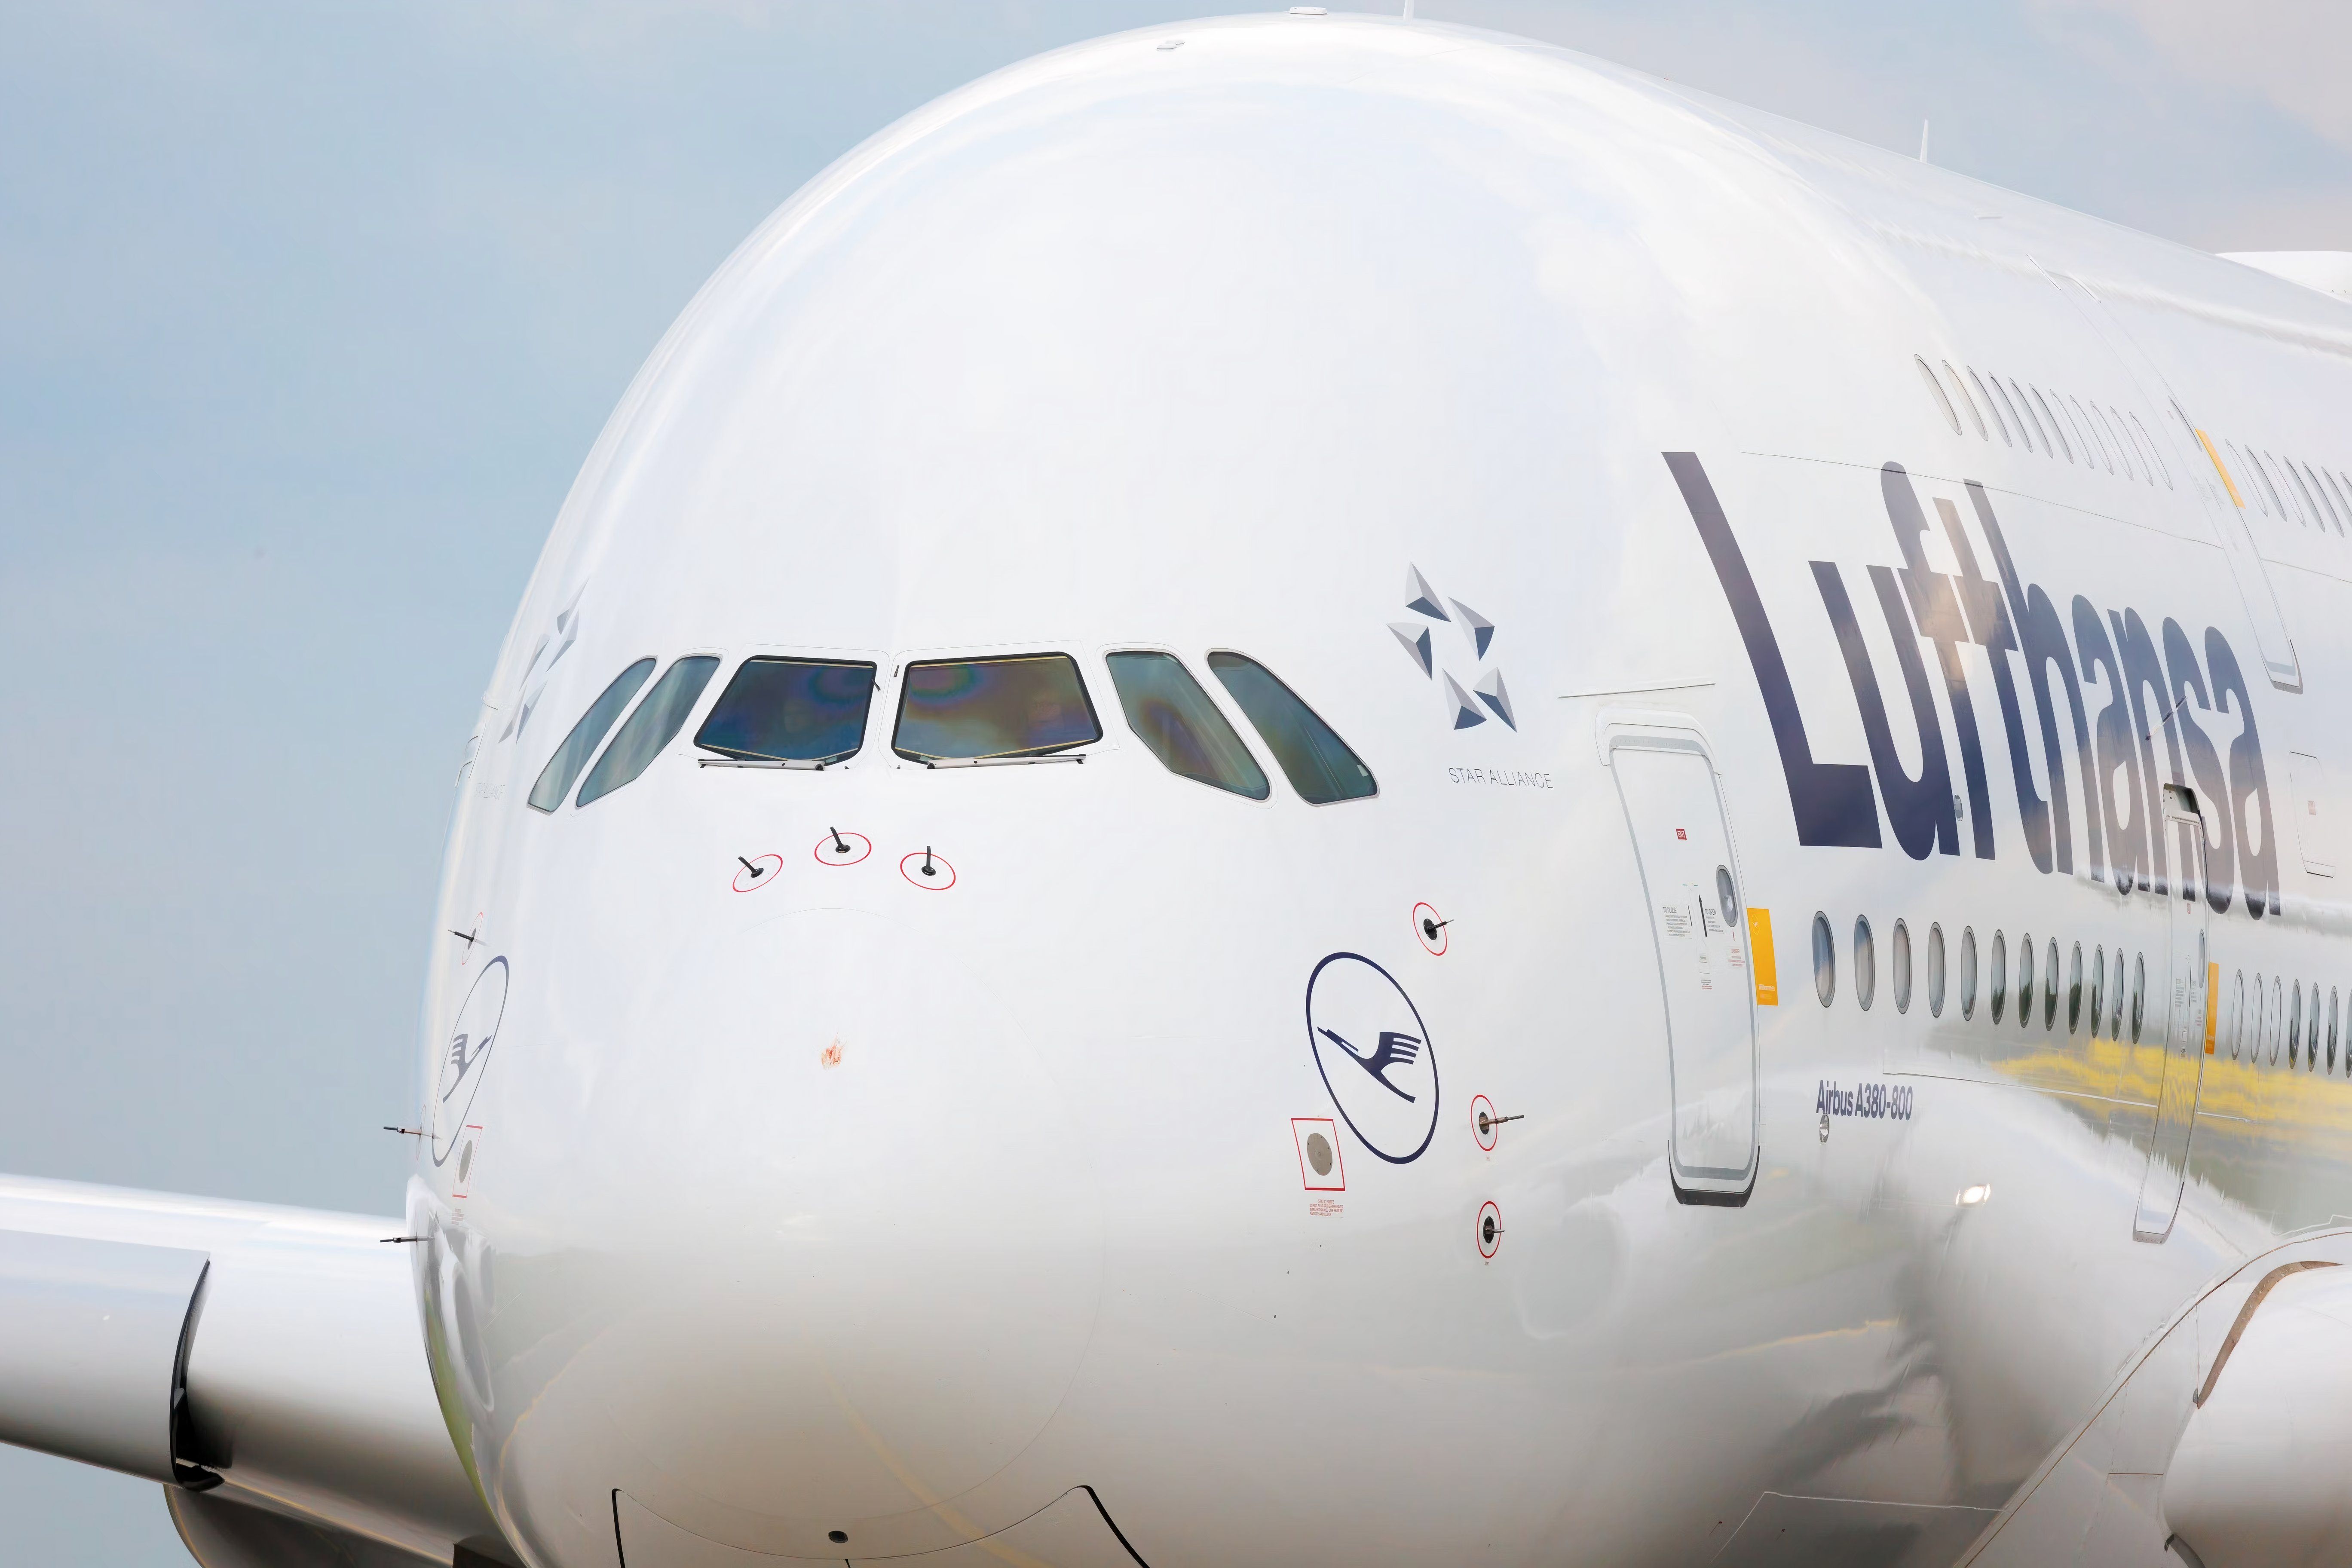 LH A380